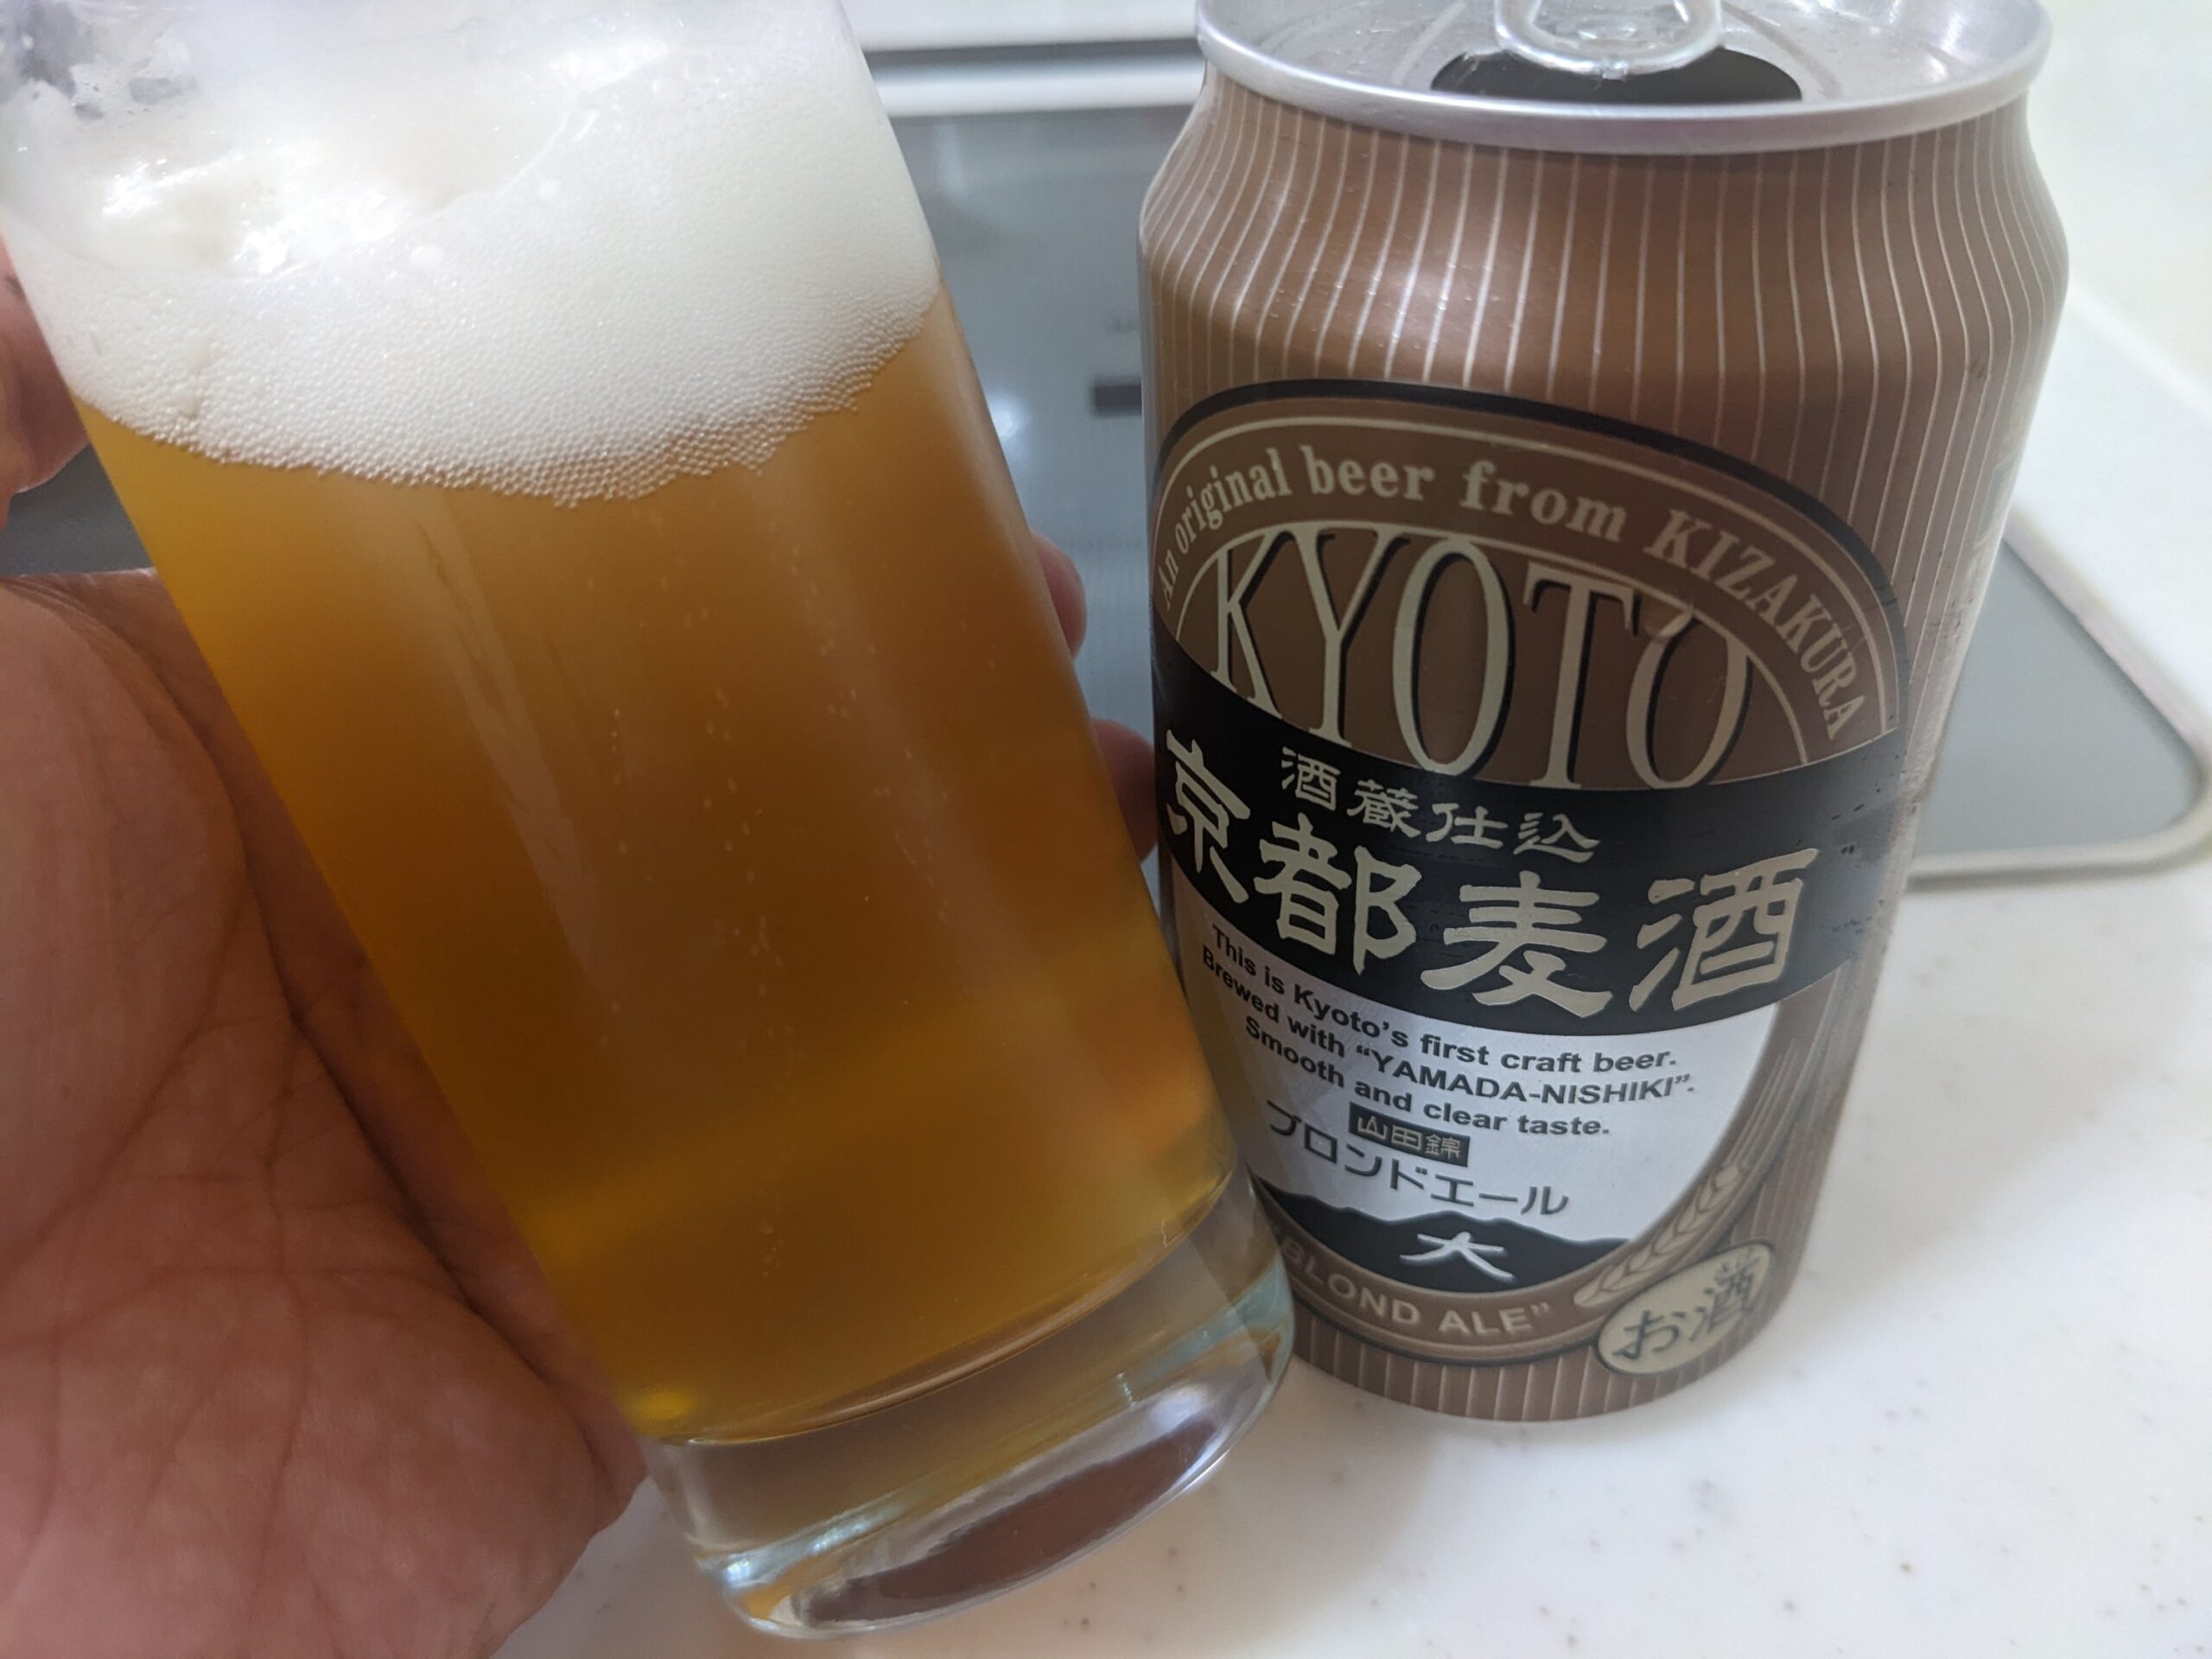 「京都麦酒ブロンドエール」が入ったグラスを傾けているところ